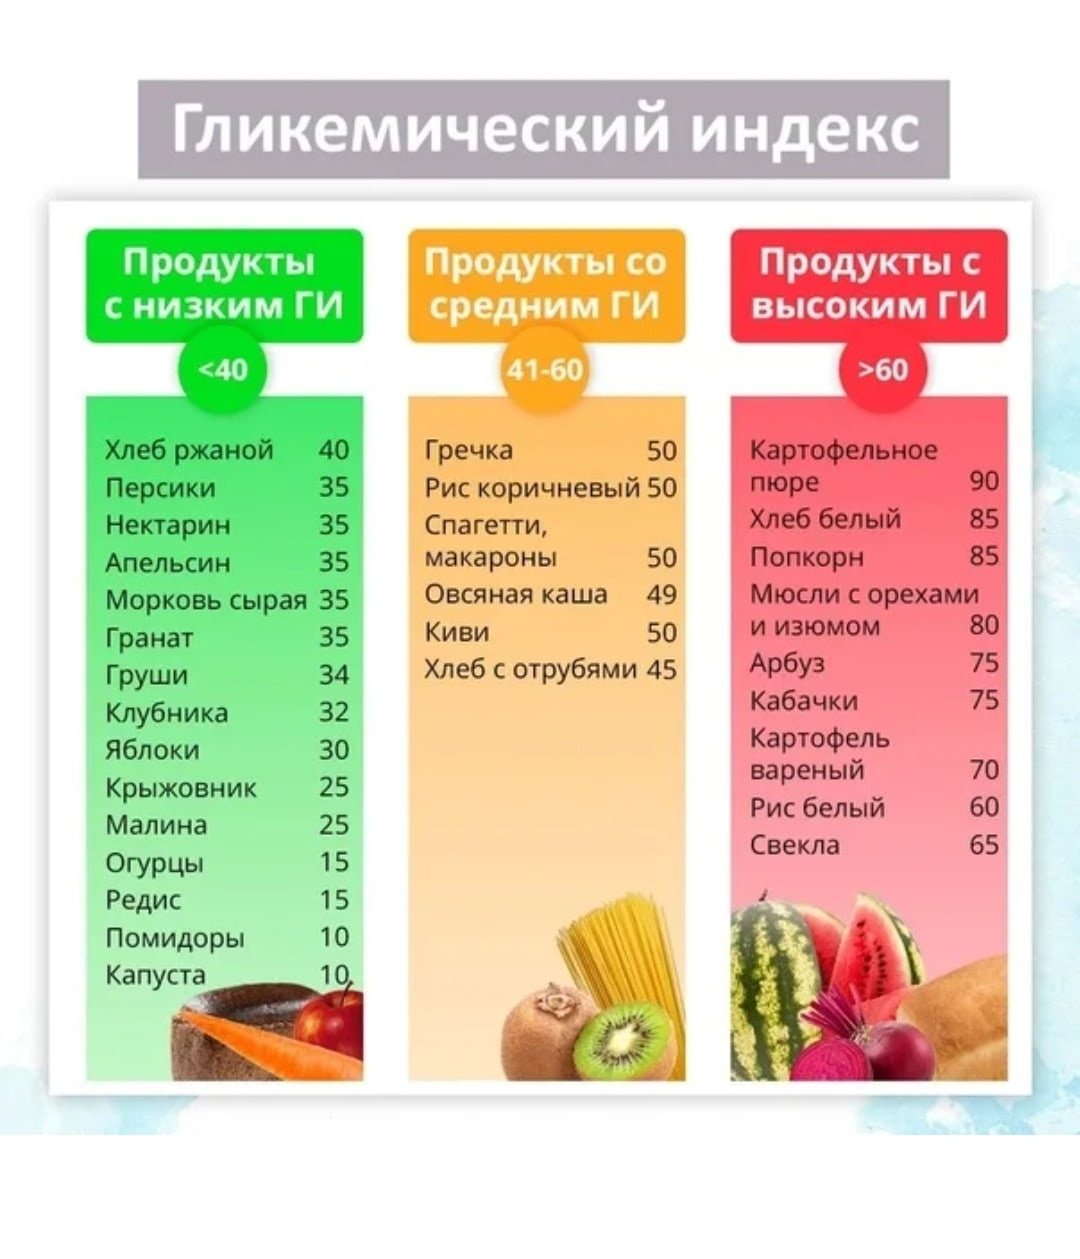 Вкусвилл груши. Крупы гликемический индекс таблица. Таблица с высоким гликемическим индексом продуктов питания. Фрукты и овощи с низким гликемическим индексом список. Таблица продуктов с гликемическим индексом диета.